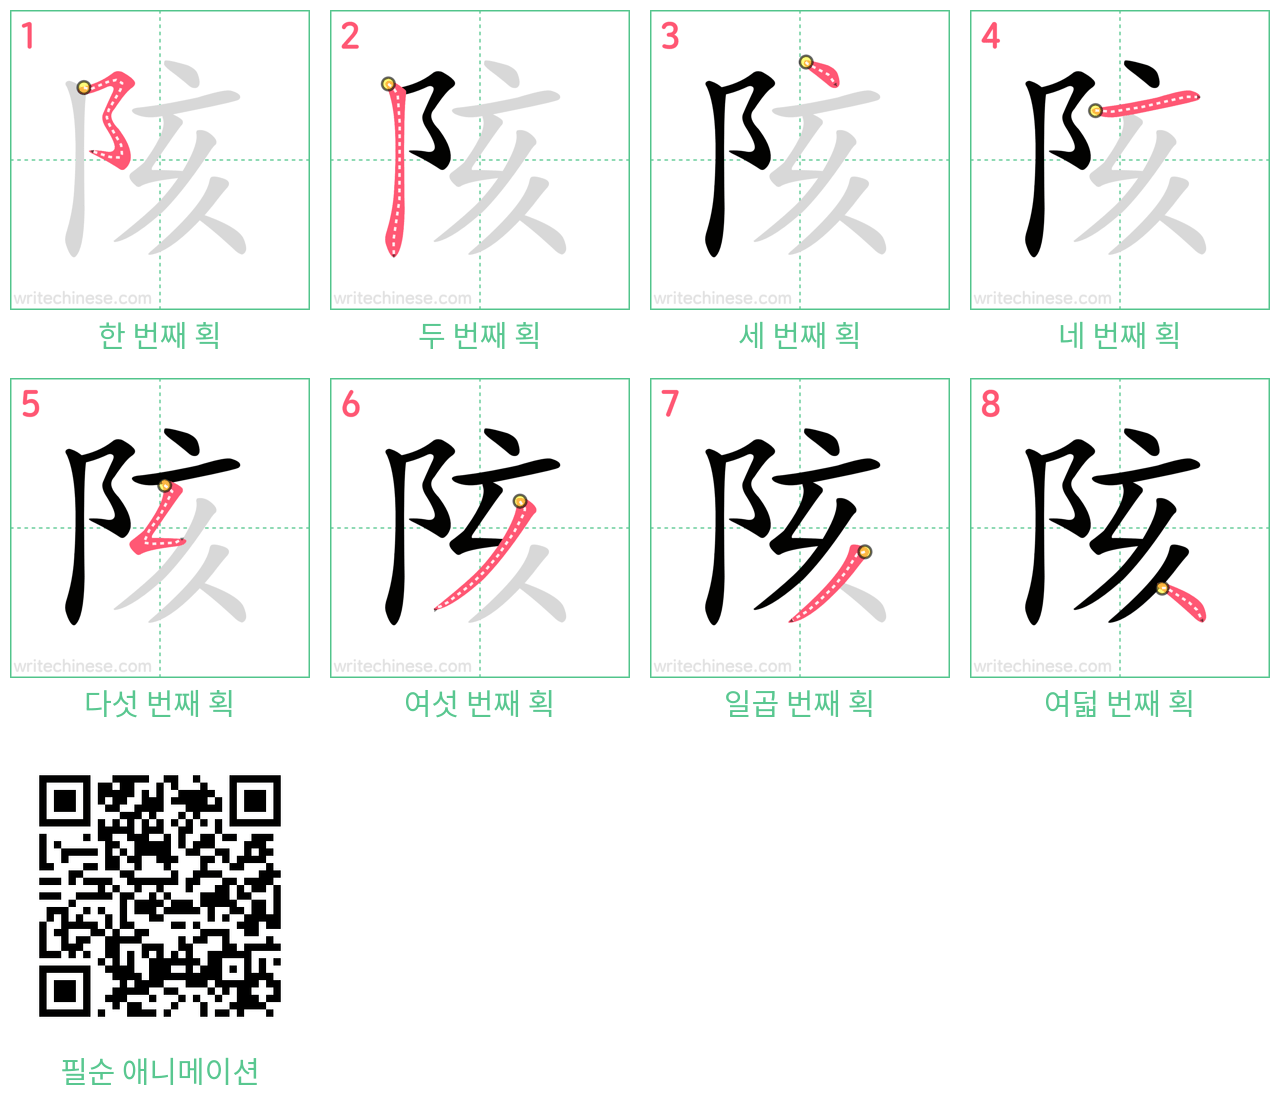 陔 step-by-step stroke order diagrams